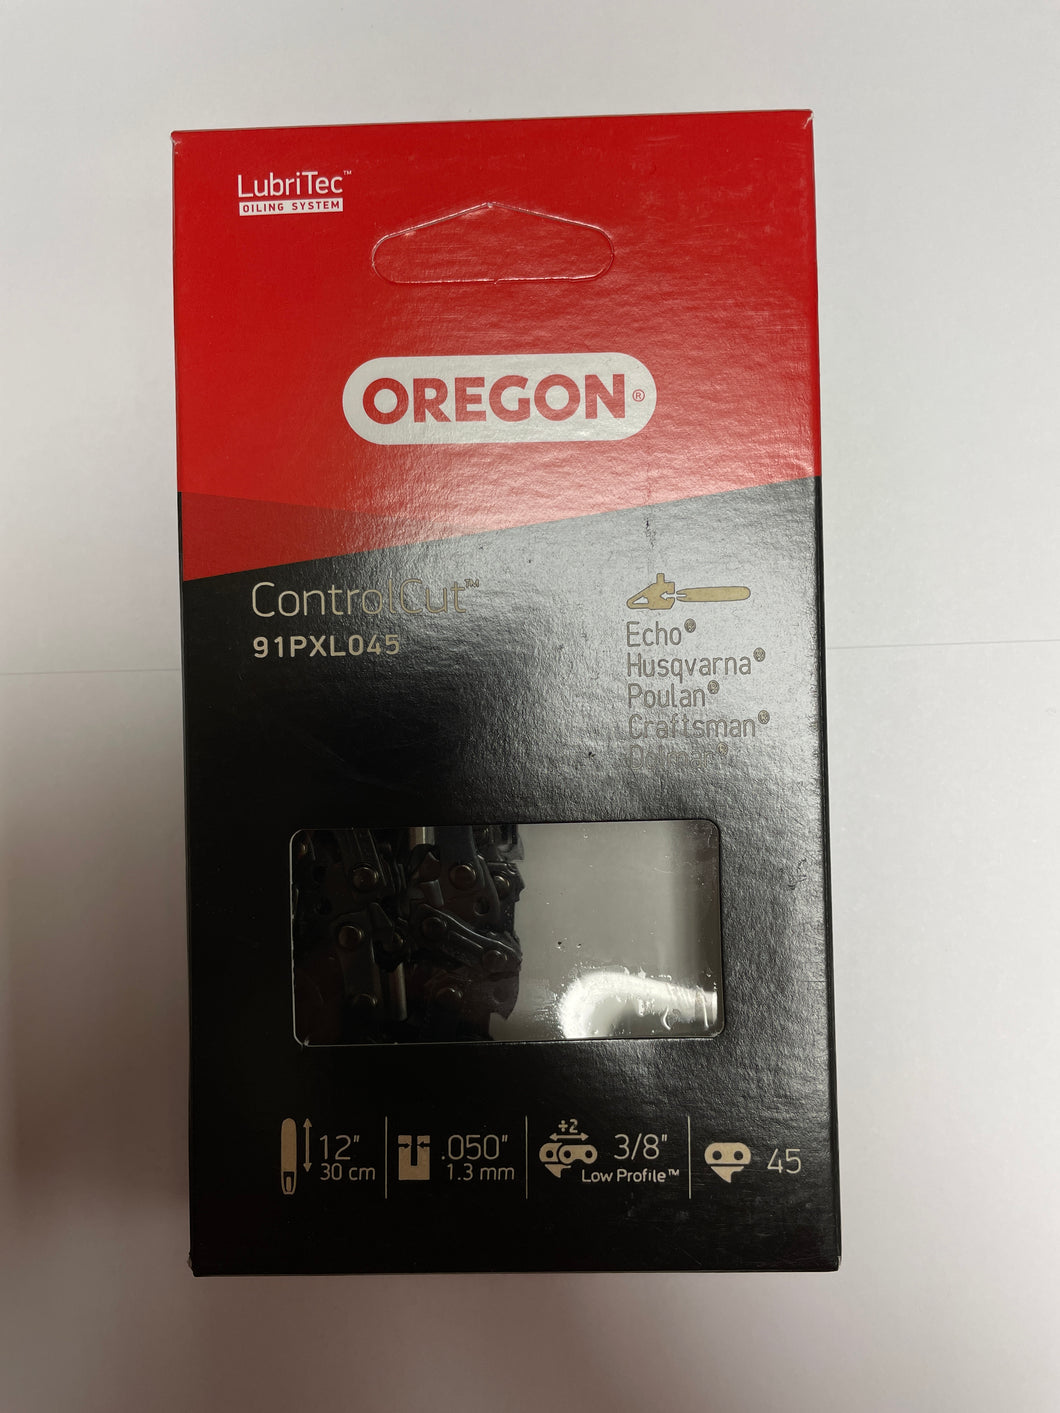 Oregon ControlCut Saw Chain - 91PXL045